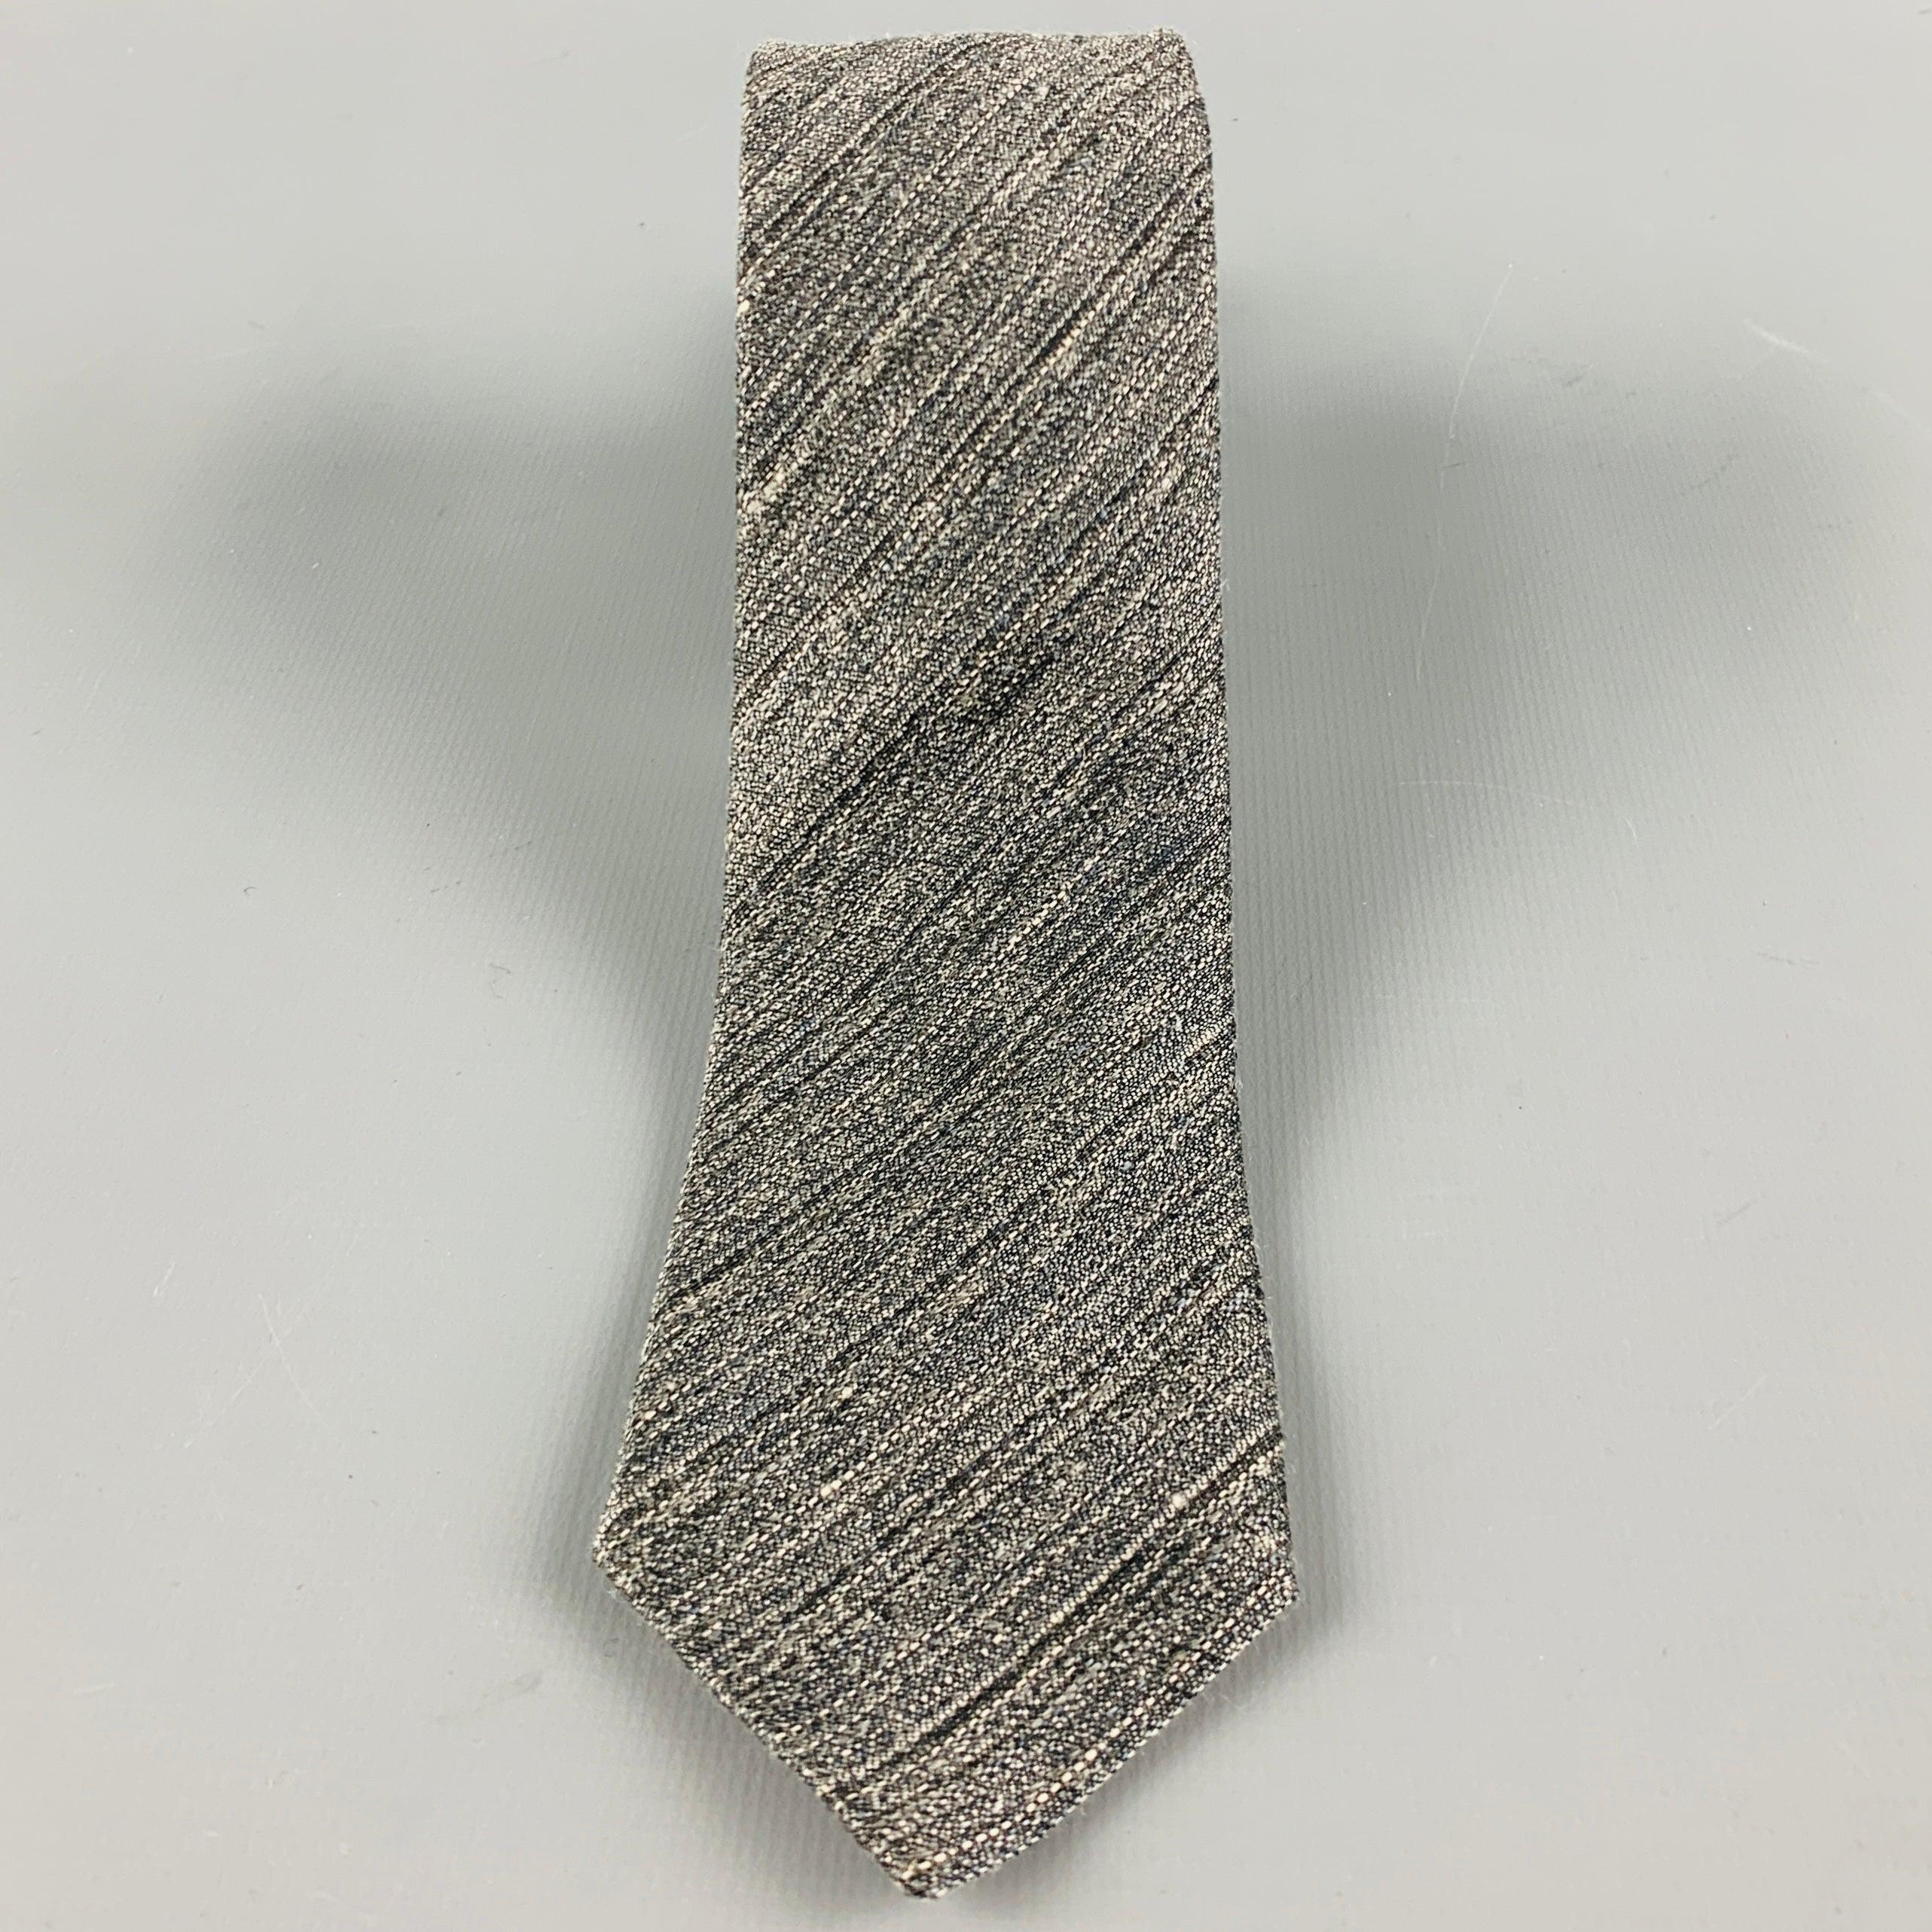 ERMENEGILDO ZEGNA
Krawatte in einer
Graues und weißes Leinen-Seidenmischgewebe mit diagonalem Streifenmuster und schmalem Schnitt. Made in Italy Ausgezeichneter Pre-Owned Zustand. 

Abmessungen: 
  Breite: 2 Zoll Länge: 60 Zoll 
  
  
